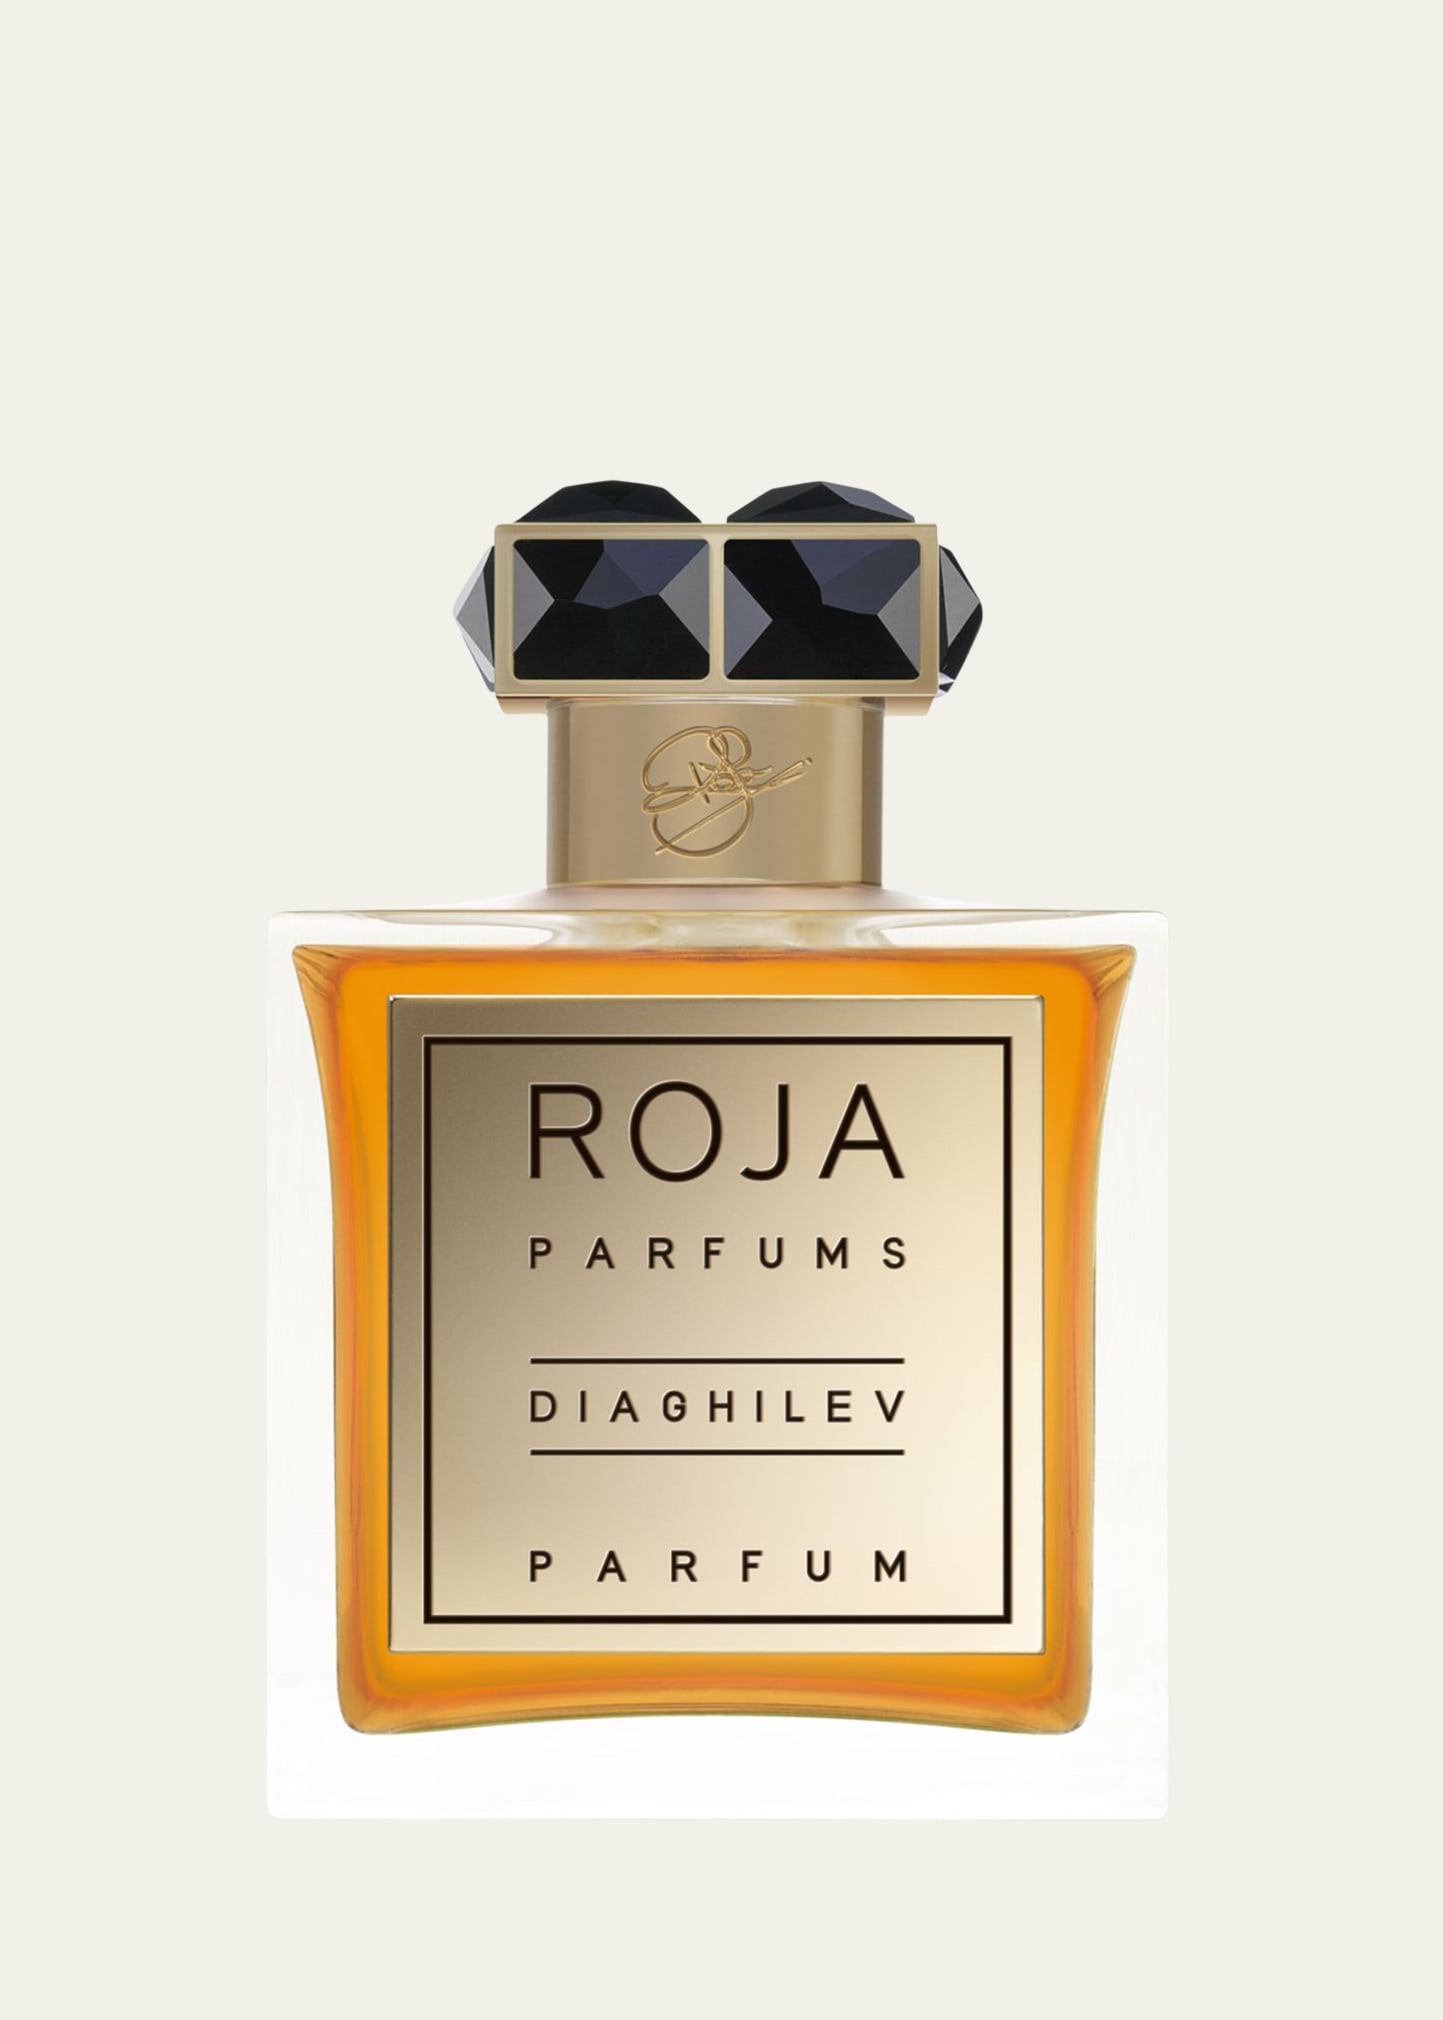 Diaghilev Parfum, 3.4 oz.